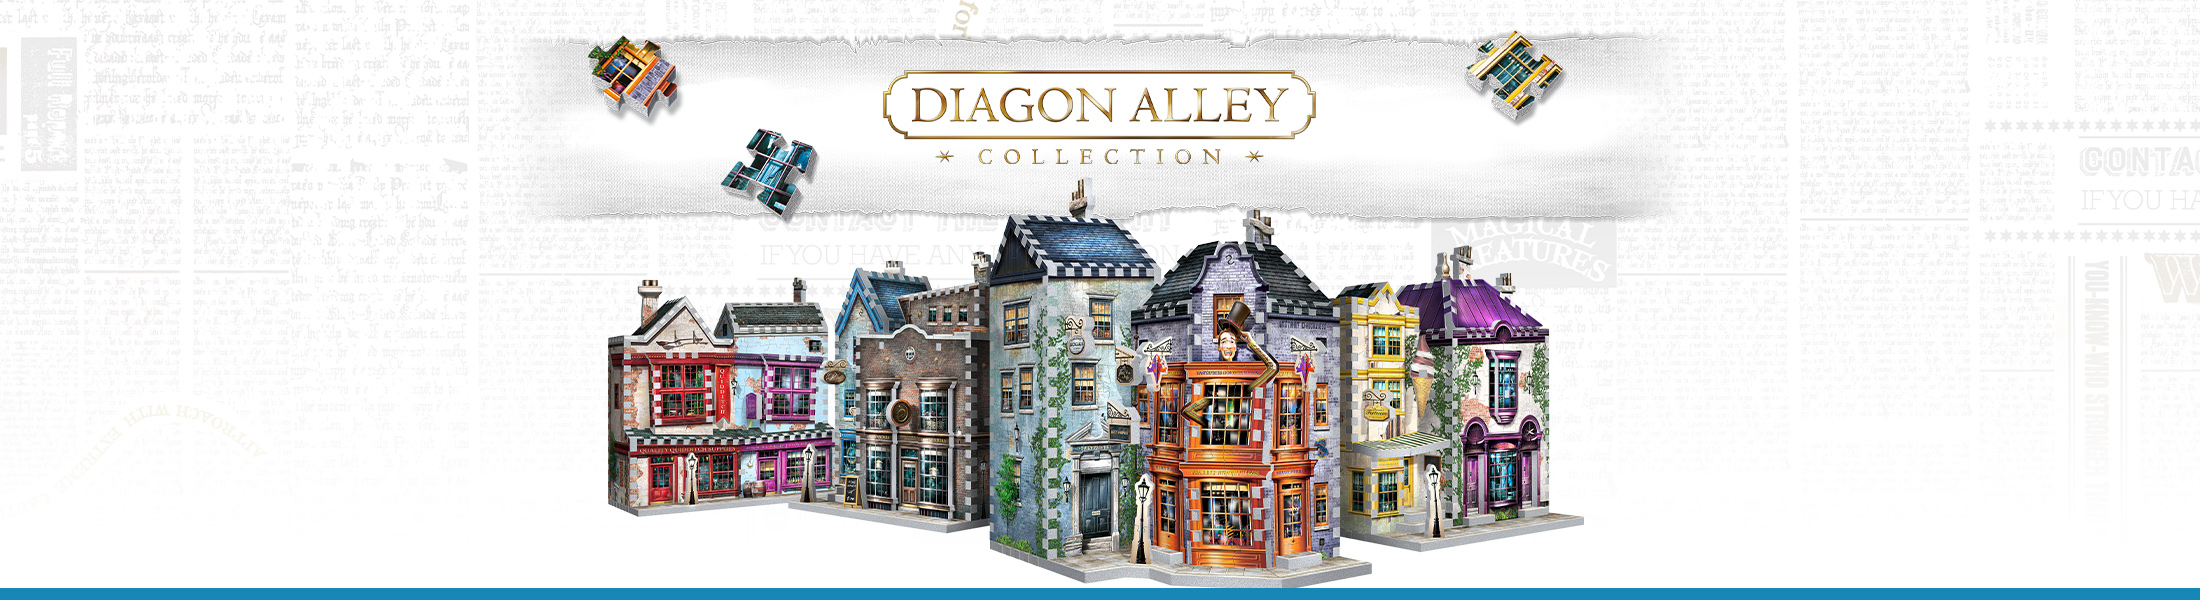  Wrebbit3D Harry Potter Diagon Alley 3D Puzzle for